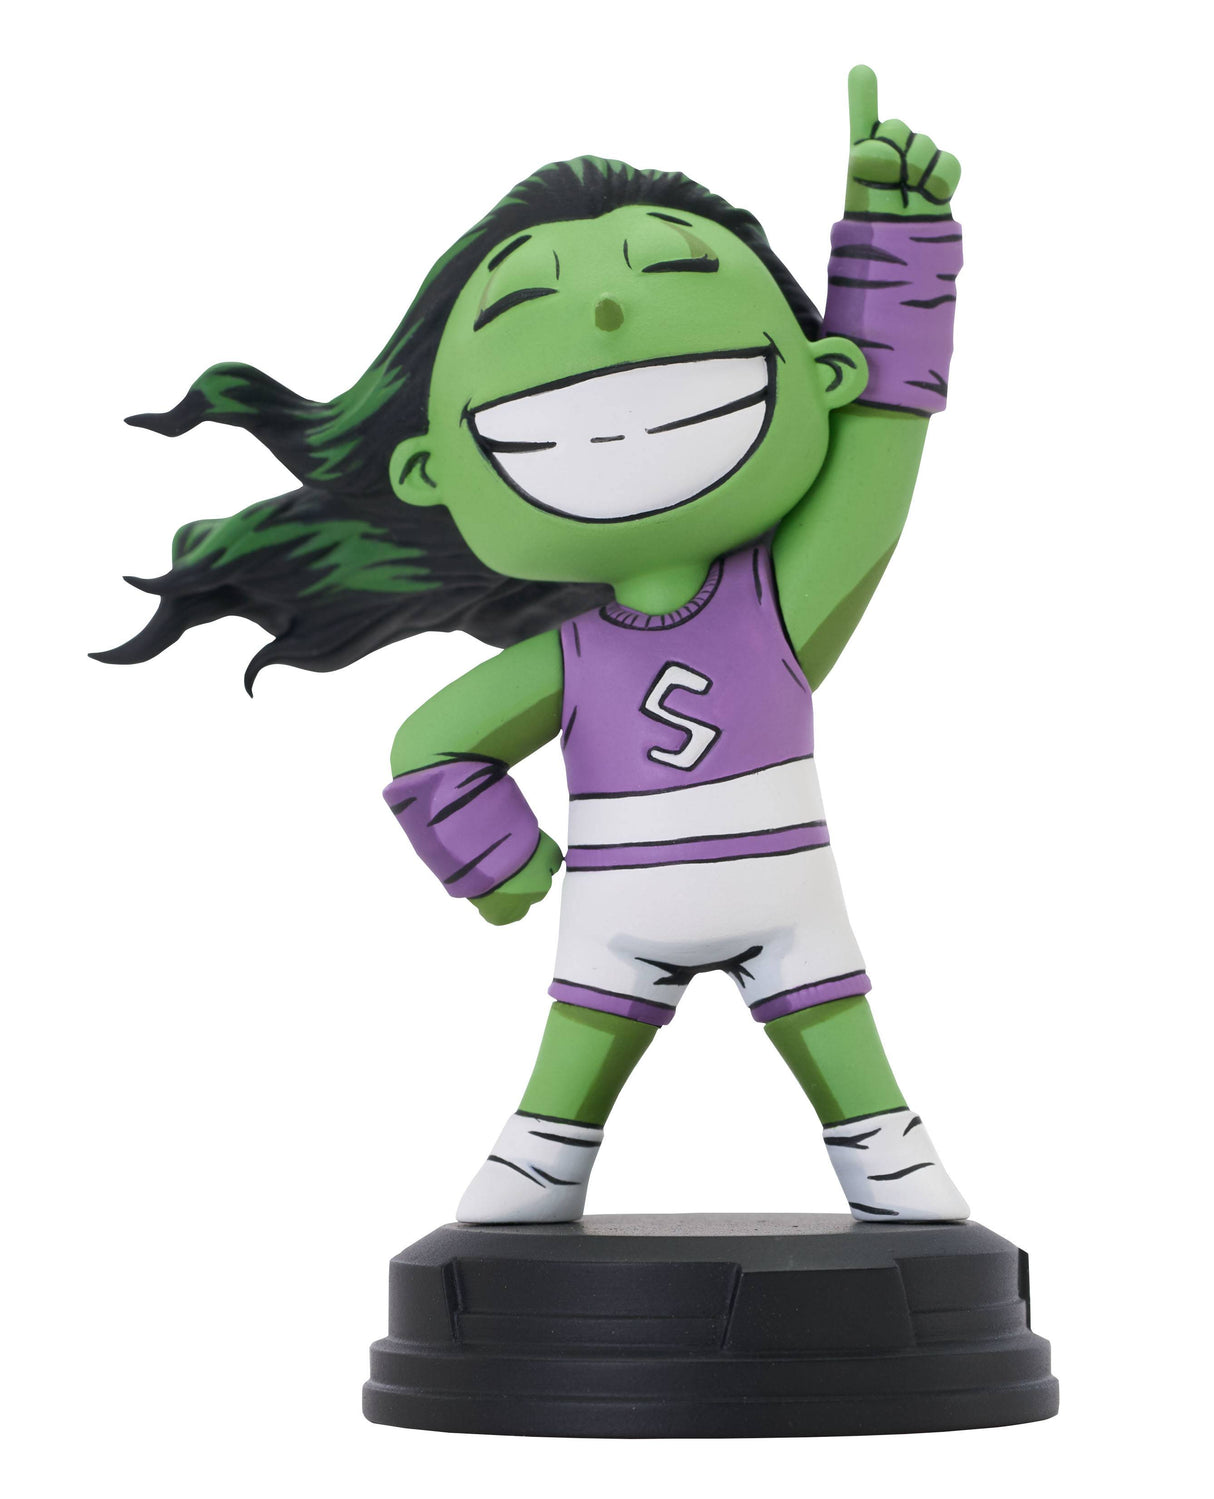 Marvel Animated-Style She-Hulk Statue